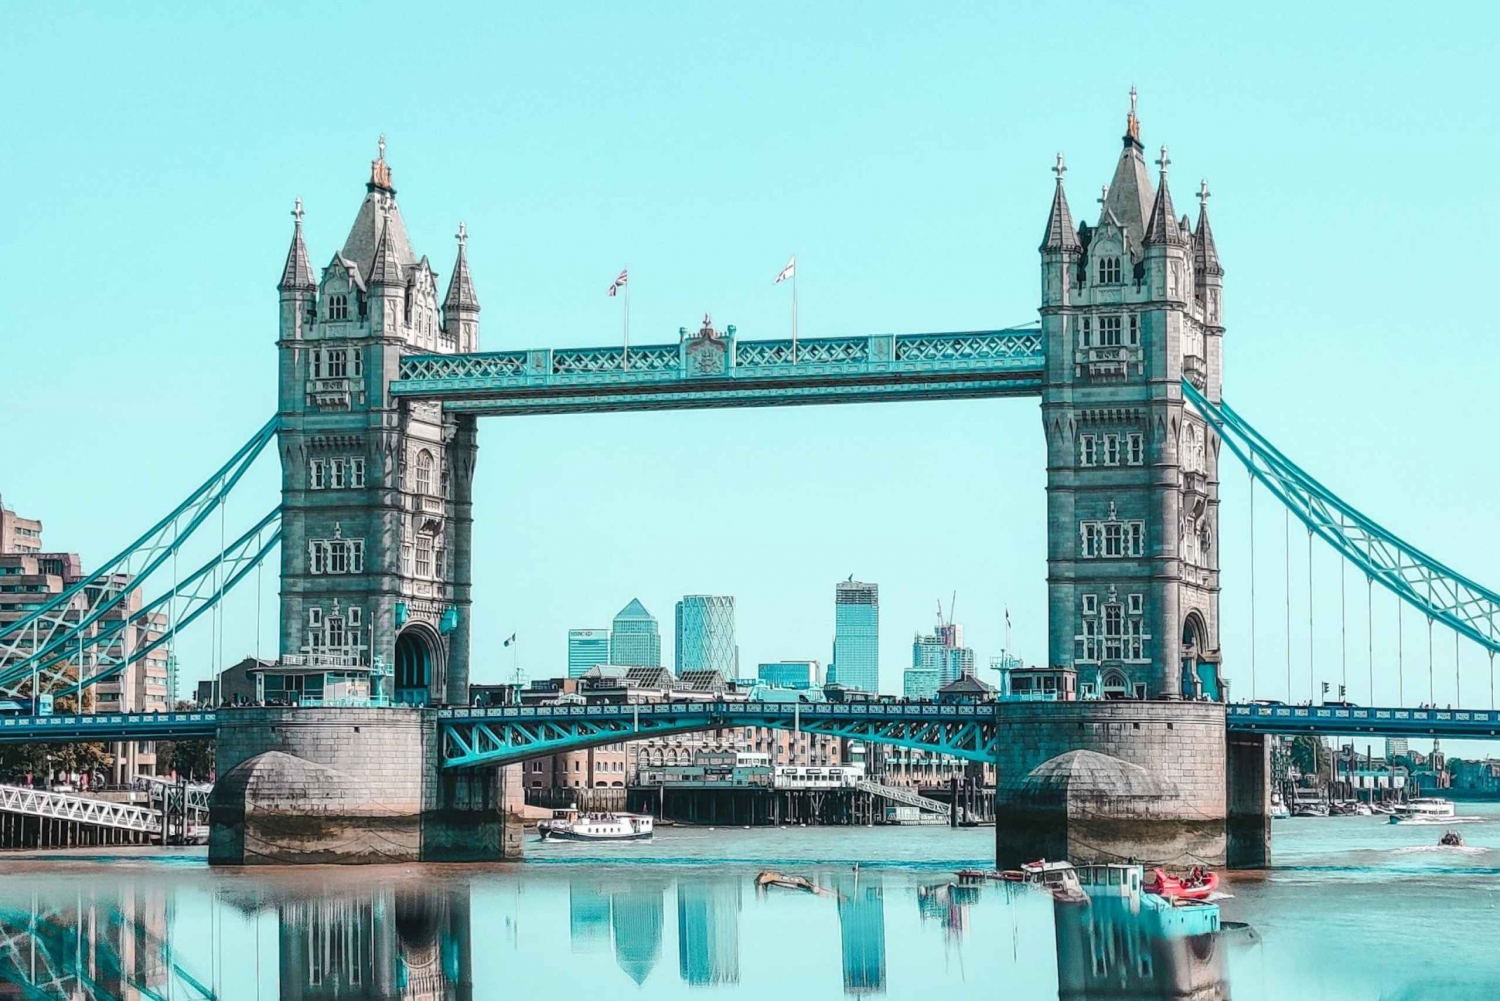 London : Digital Audio Guide for Tower bridge